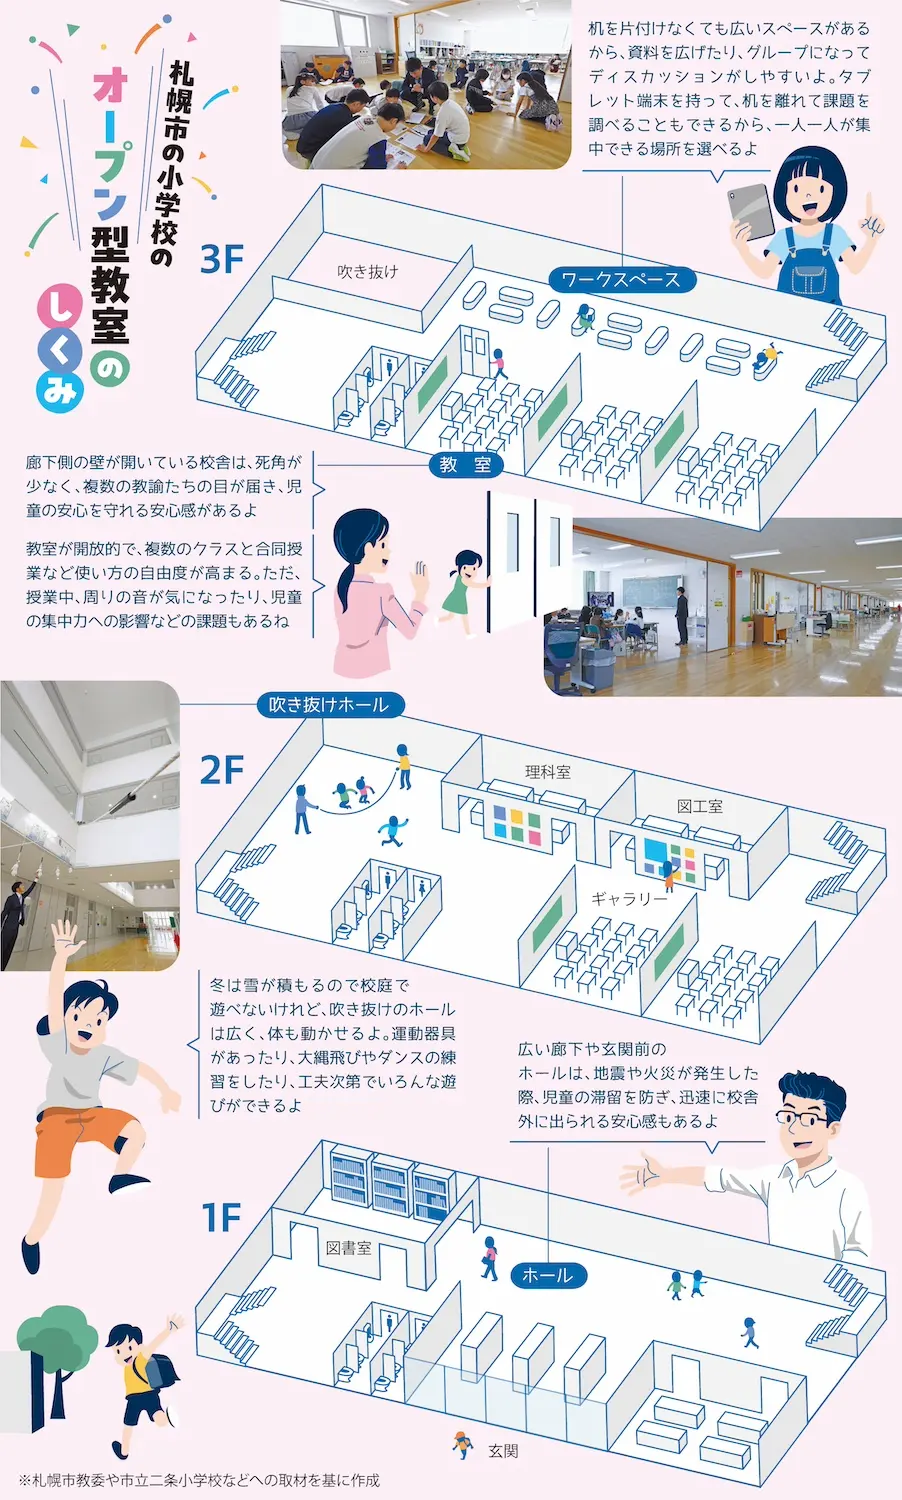 札幌市の小学校のオープン型教室の仕組み